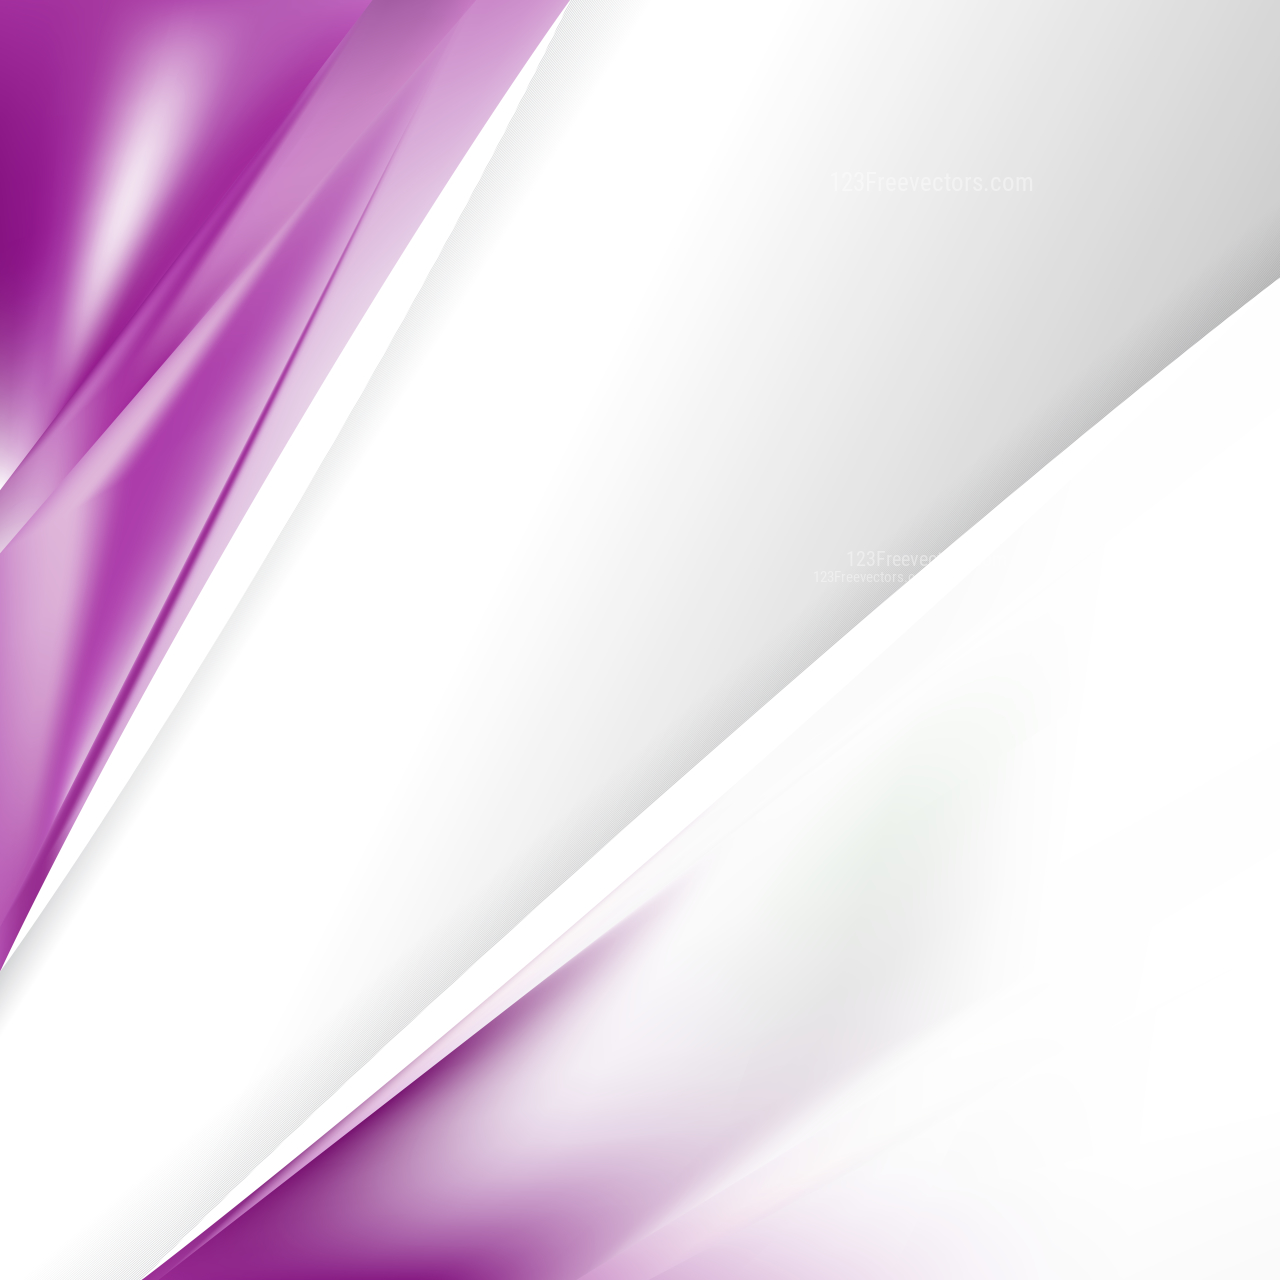 Purple and White Brochure Design Image